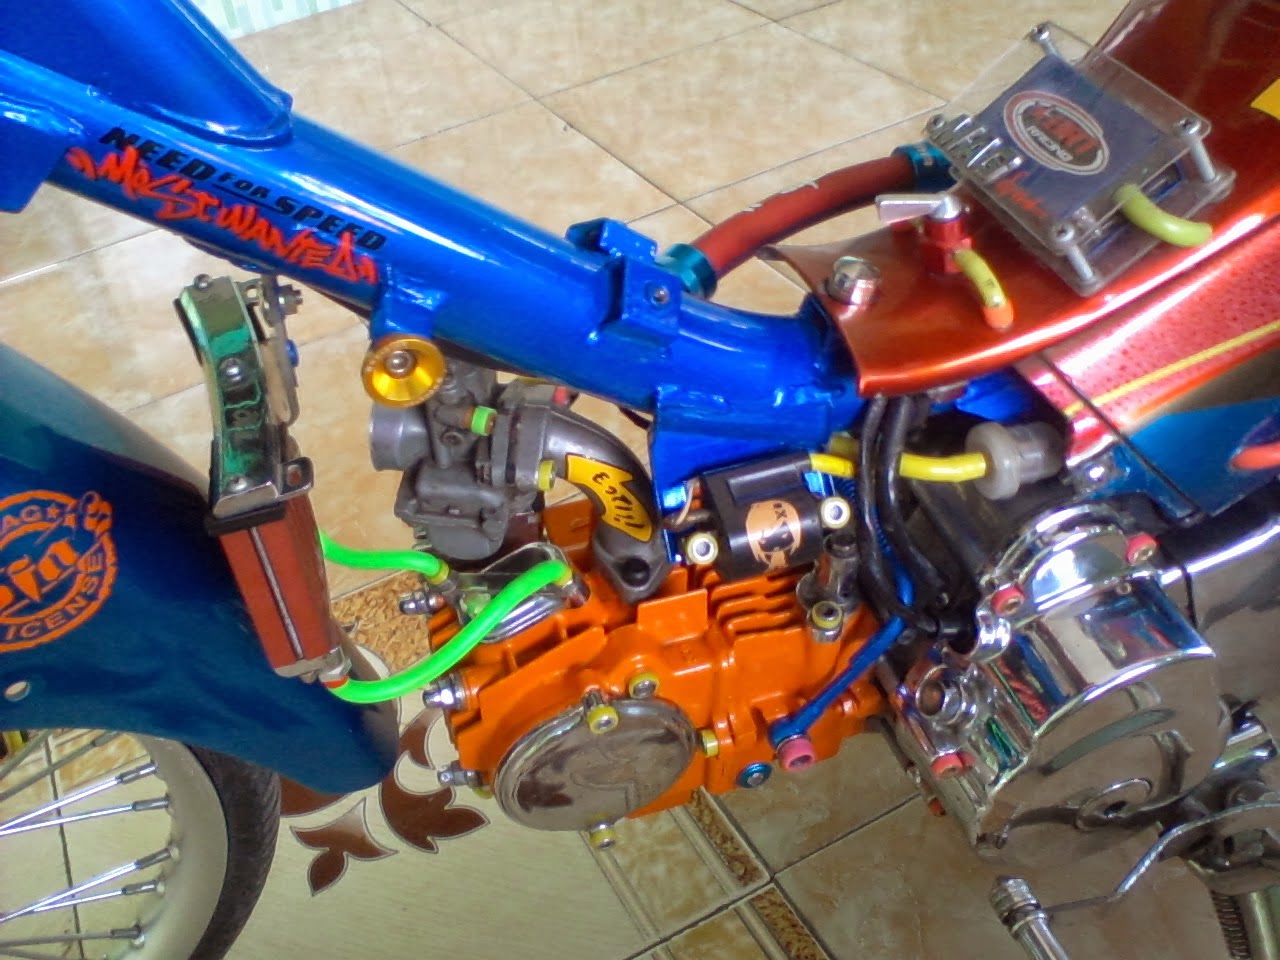 Koleksi Modif Yamaha Jupiter Z Road Race Terlengkap Fire Modif